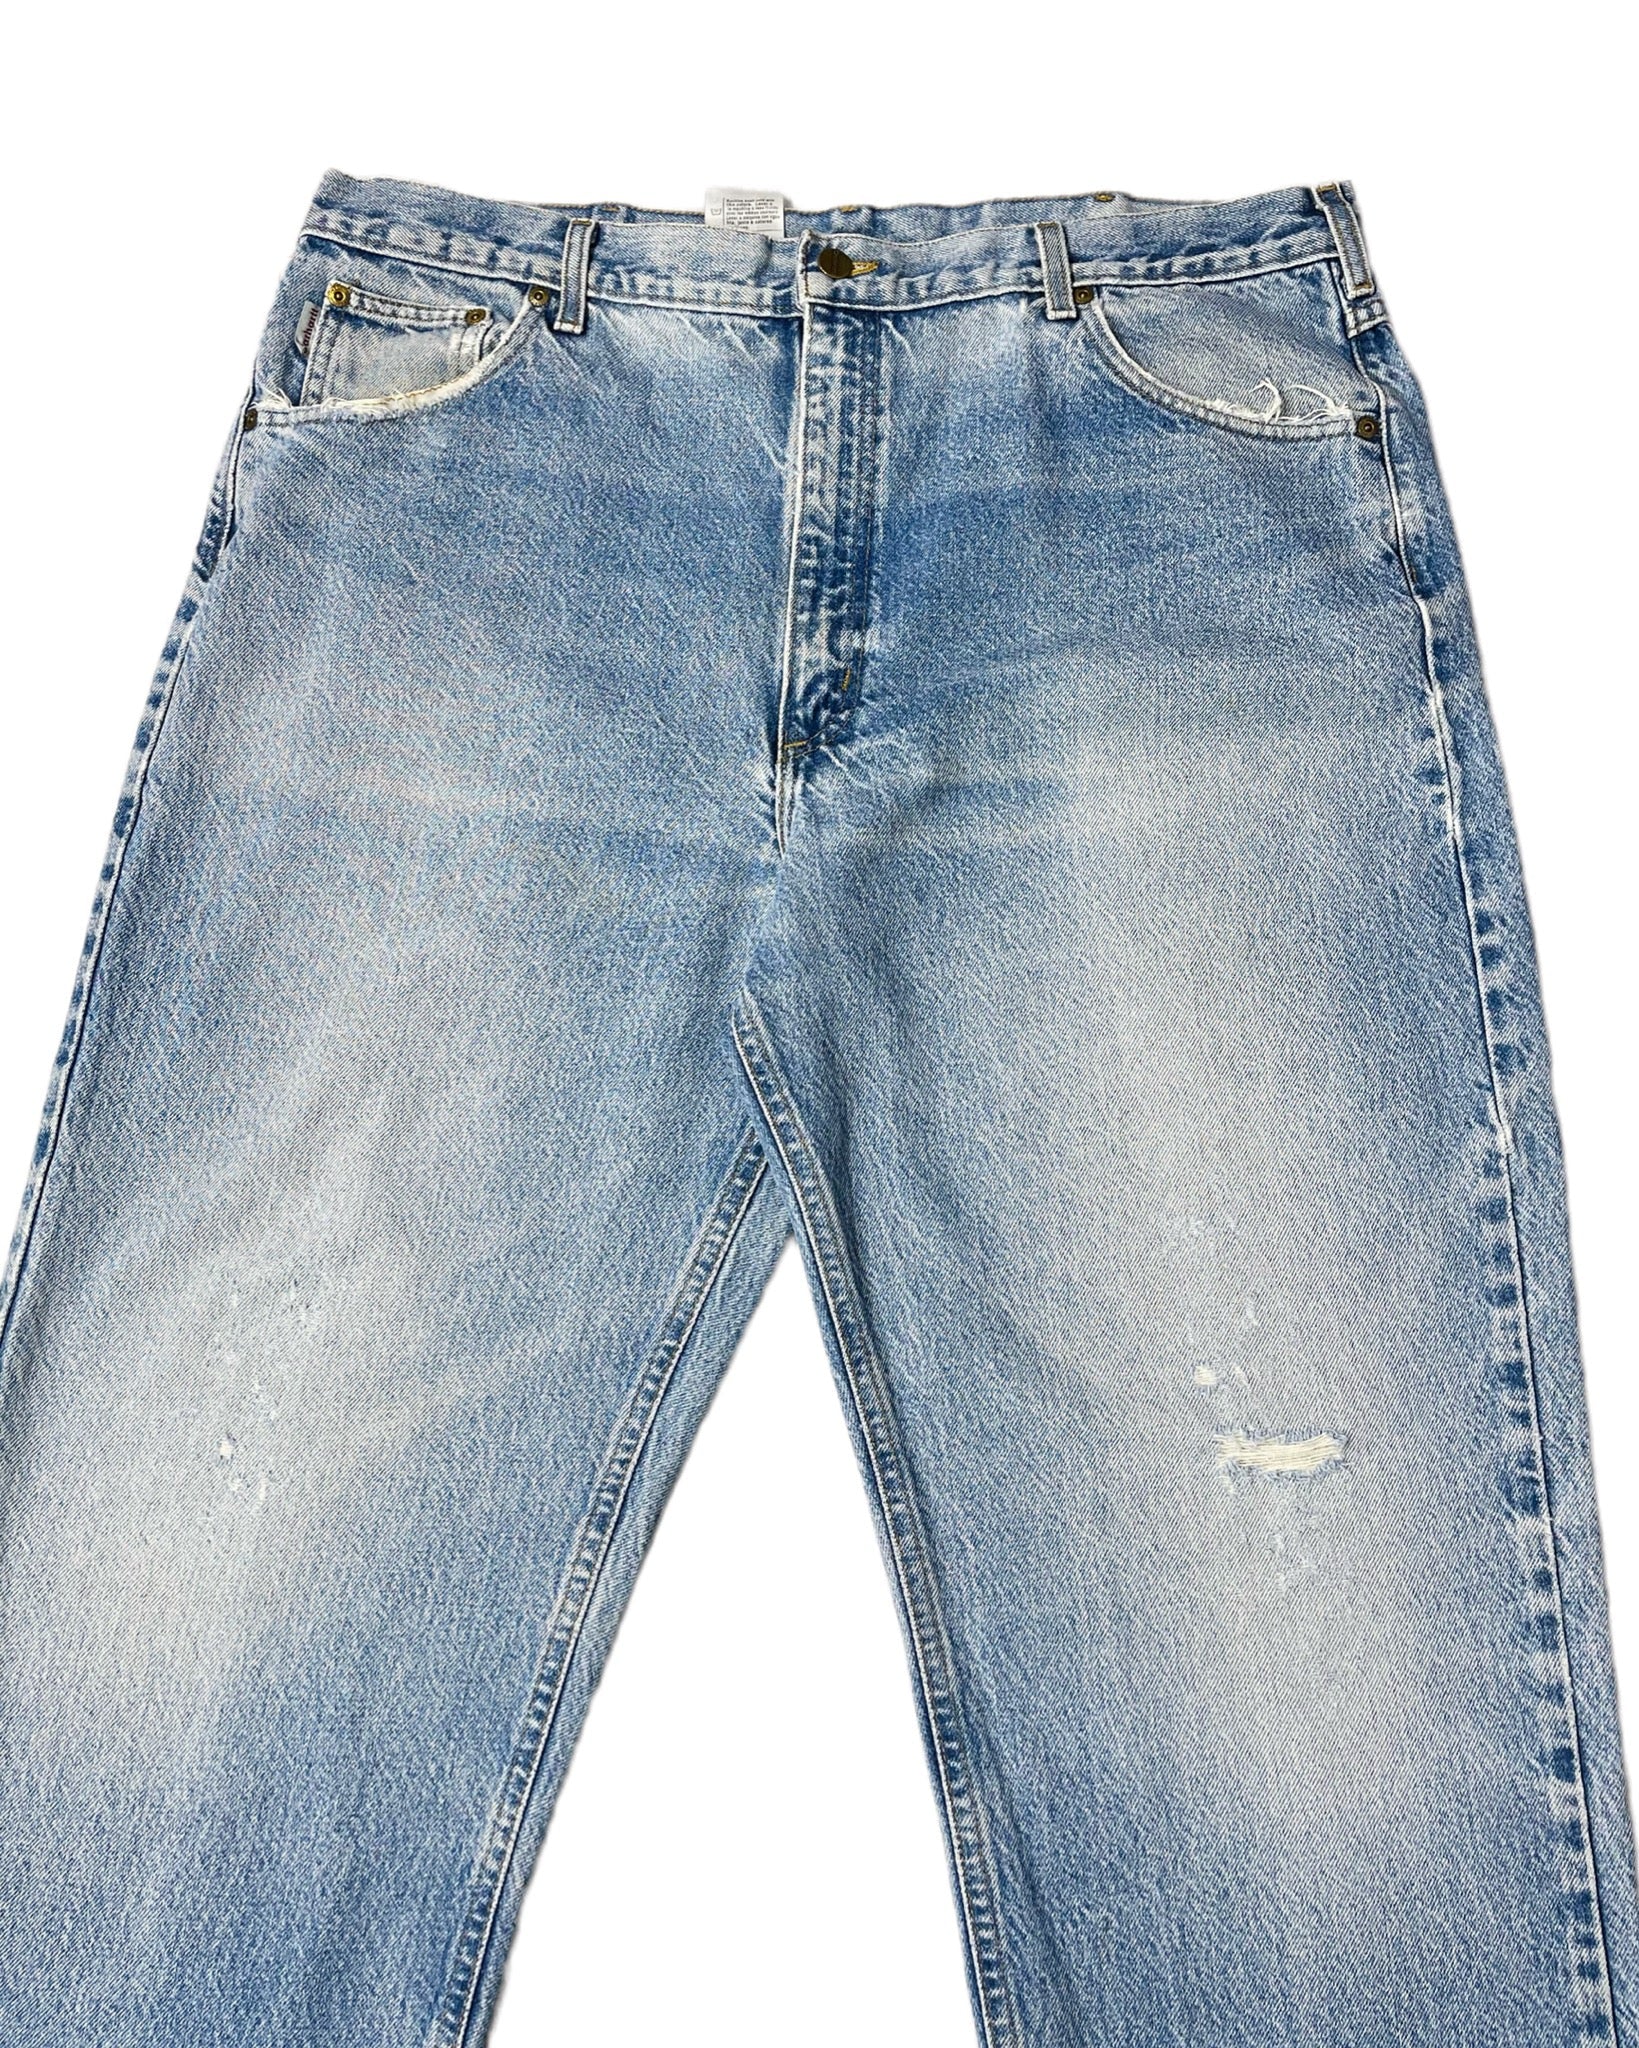  Jeans Carhartt Jean - B170DST - W42 L32 - PLOMOSTORE